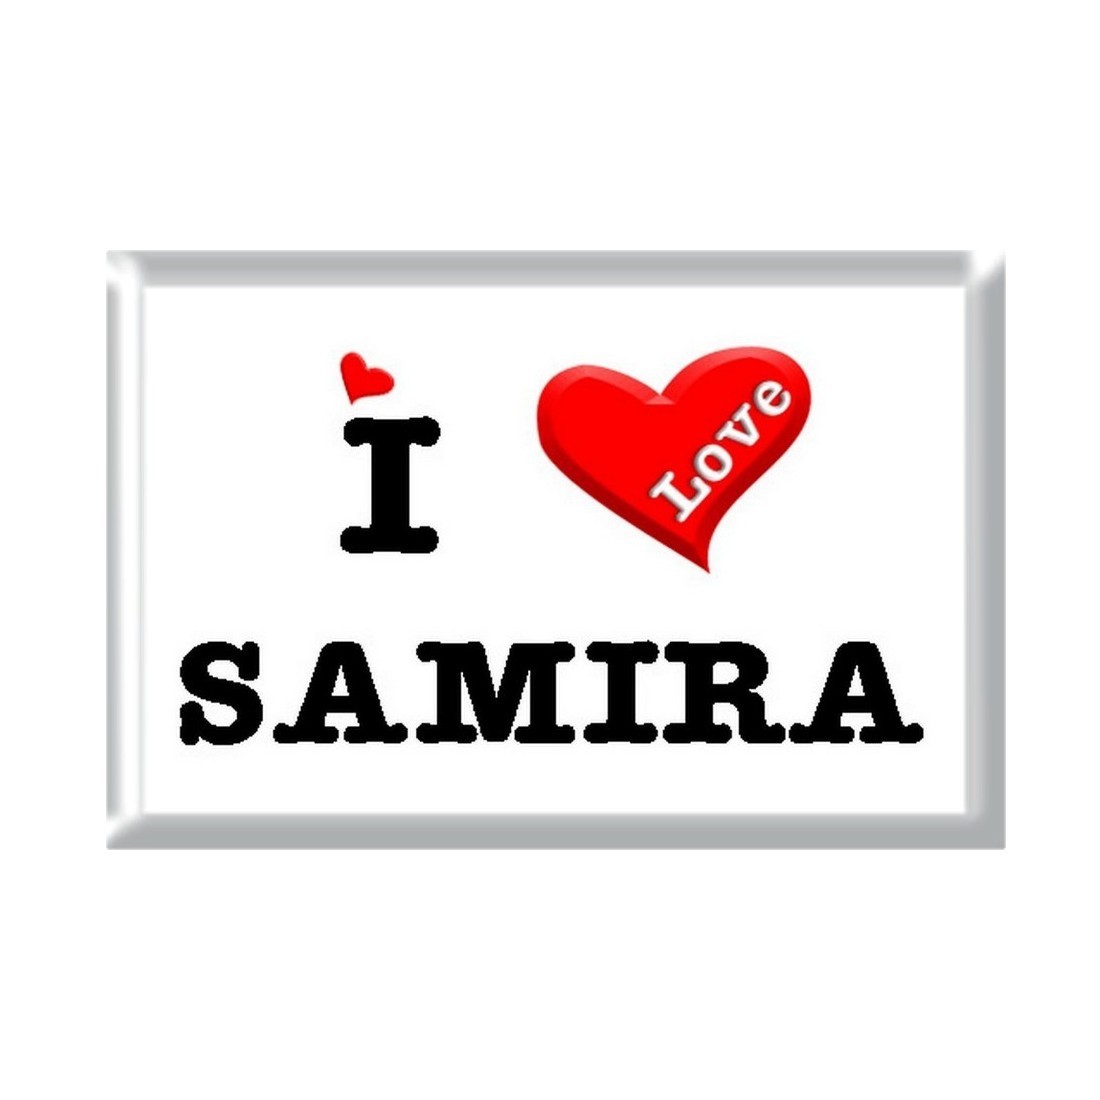 samira name wallpaper